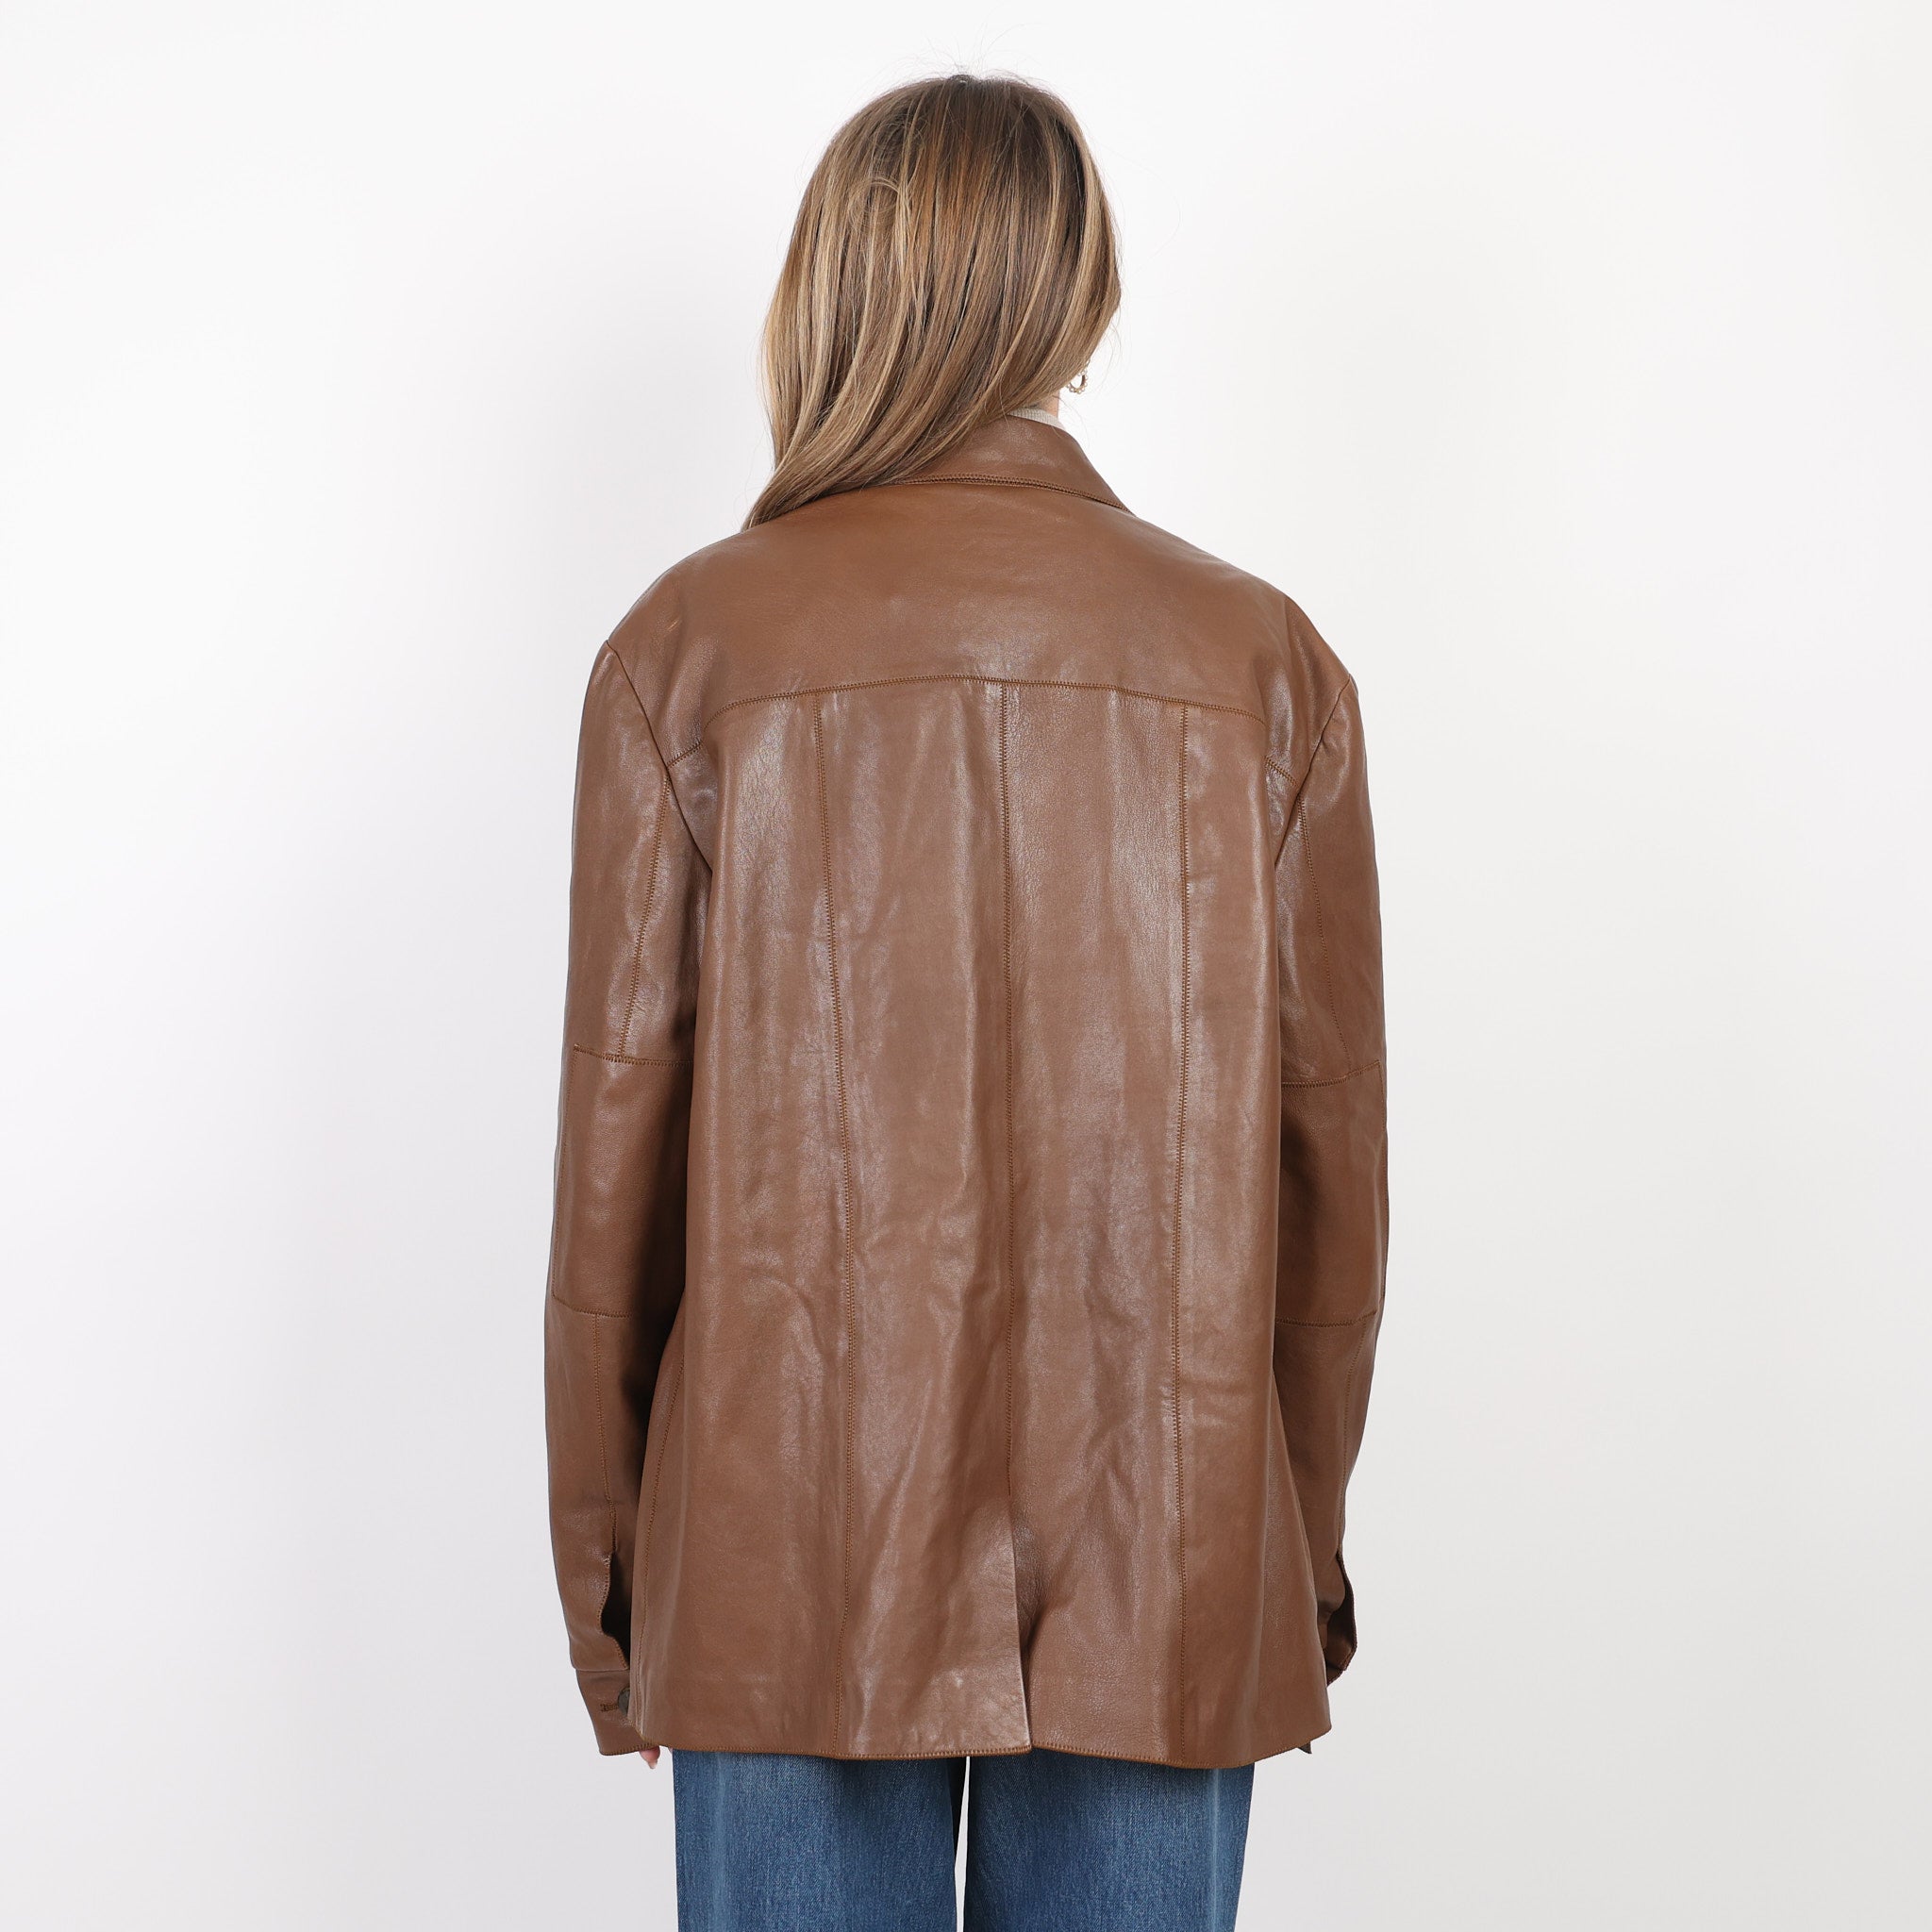 Jacket, UK Size 10